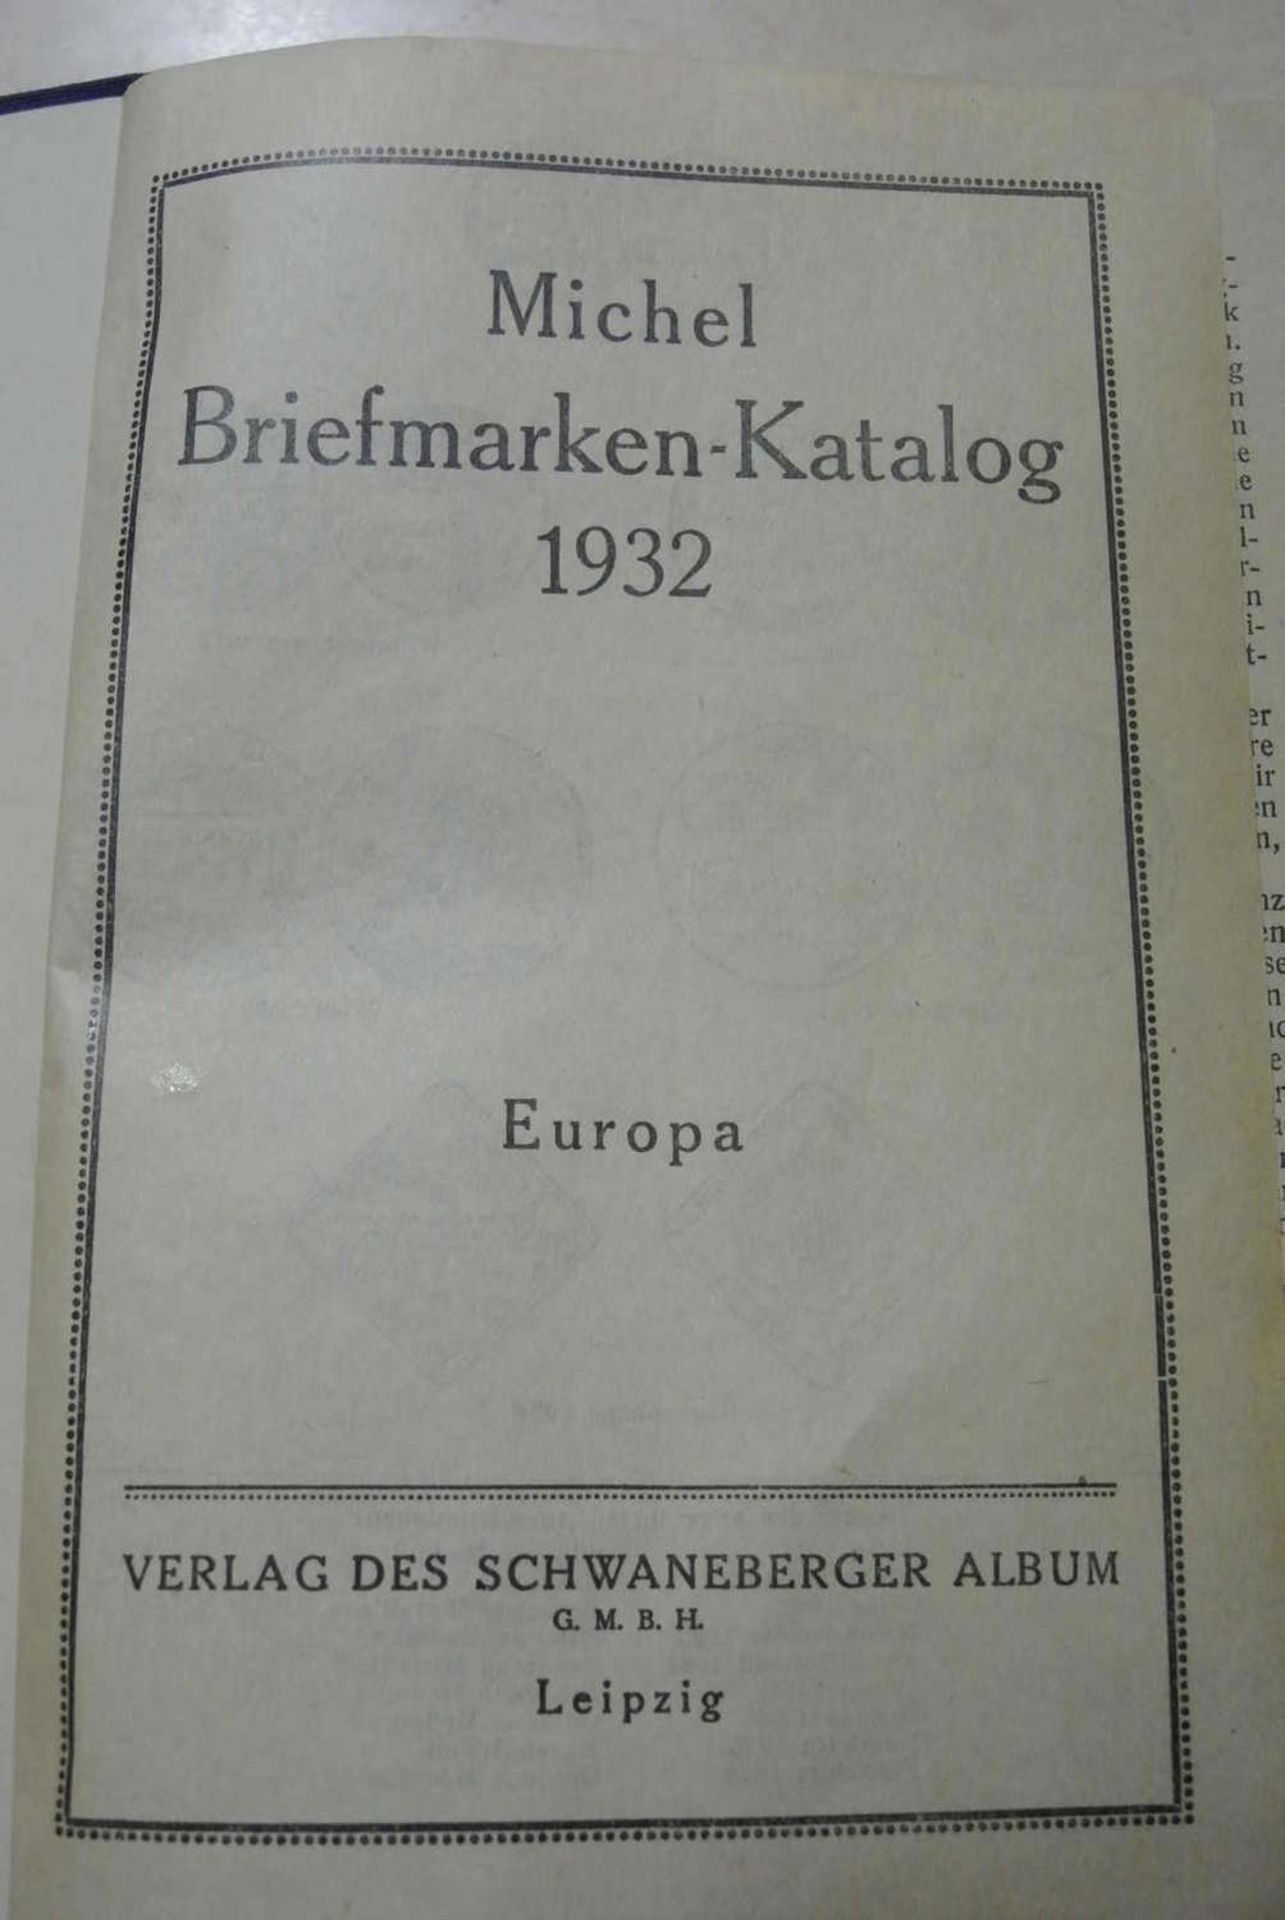 Michel Briefmarkenkatalog 1932 "Europa" - Bild 2 aus 4